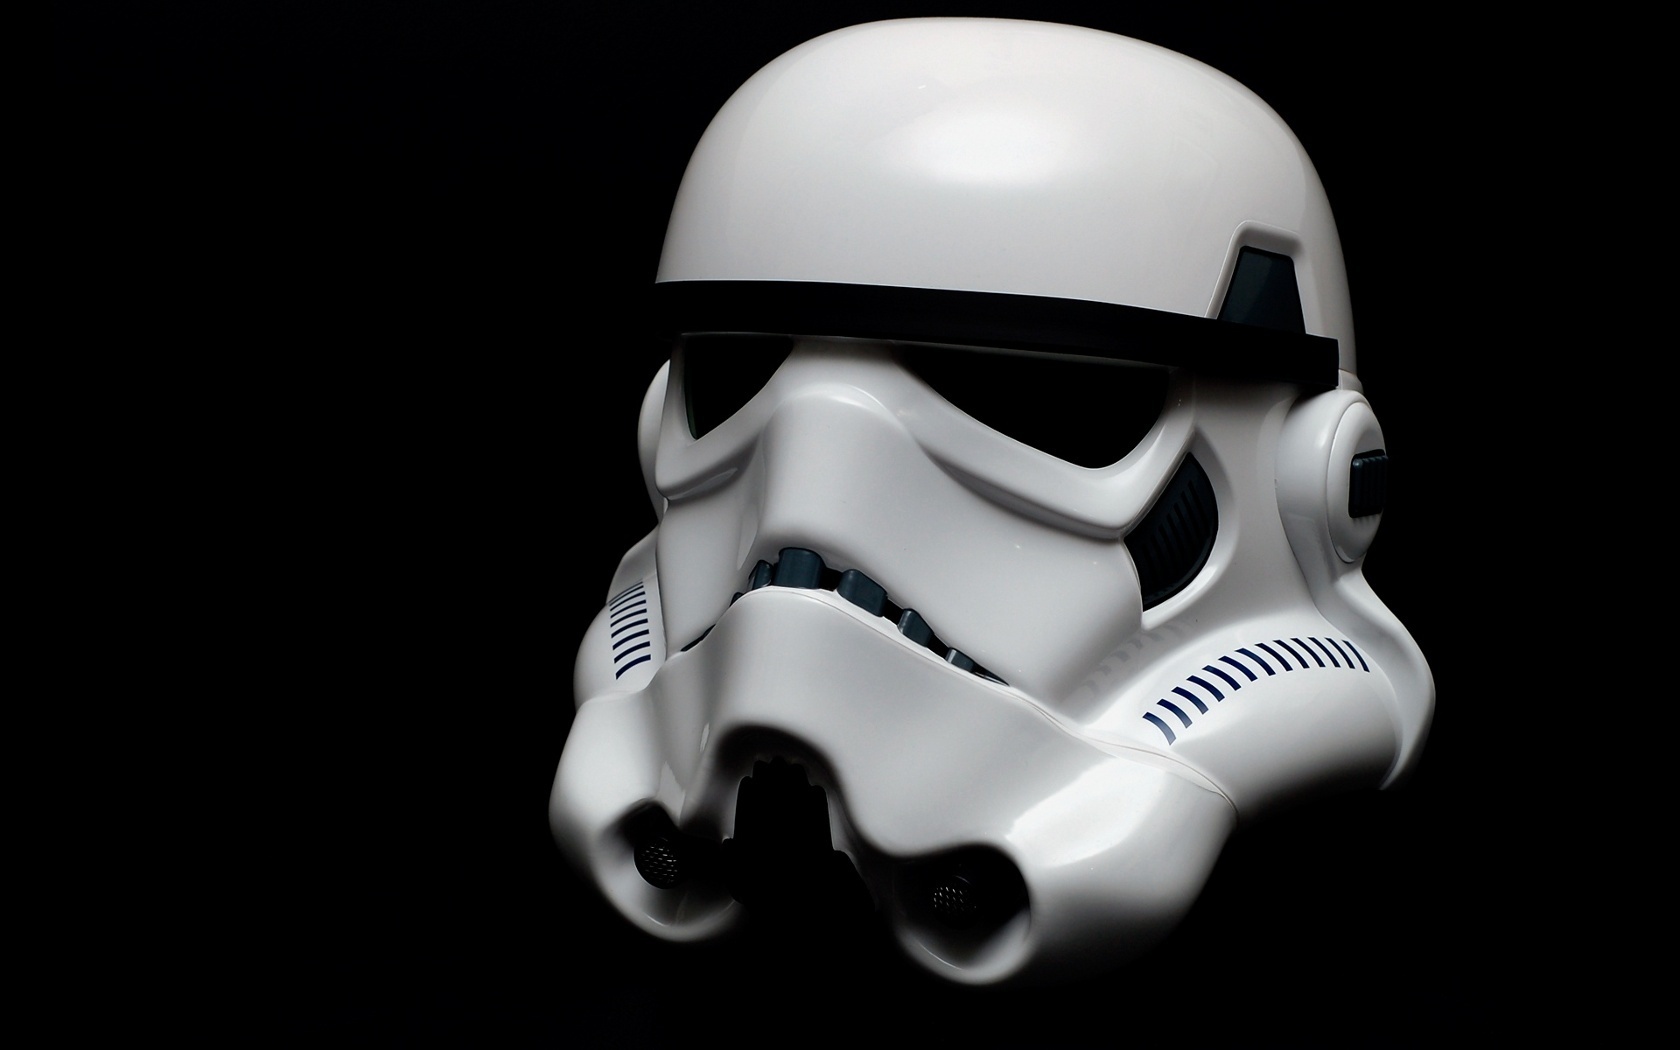 Stormtrooper Star Wars Wallpaper Helmet Desktop Celebrity And